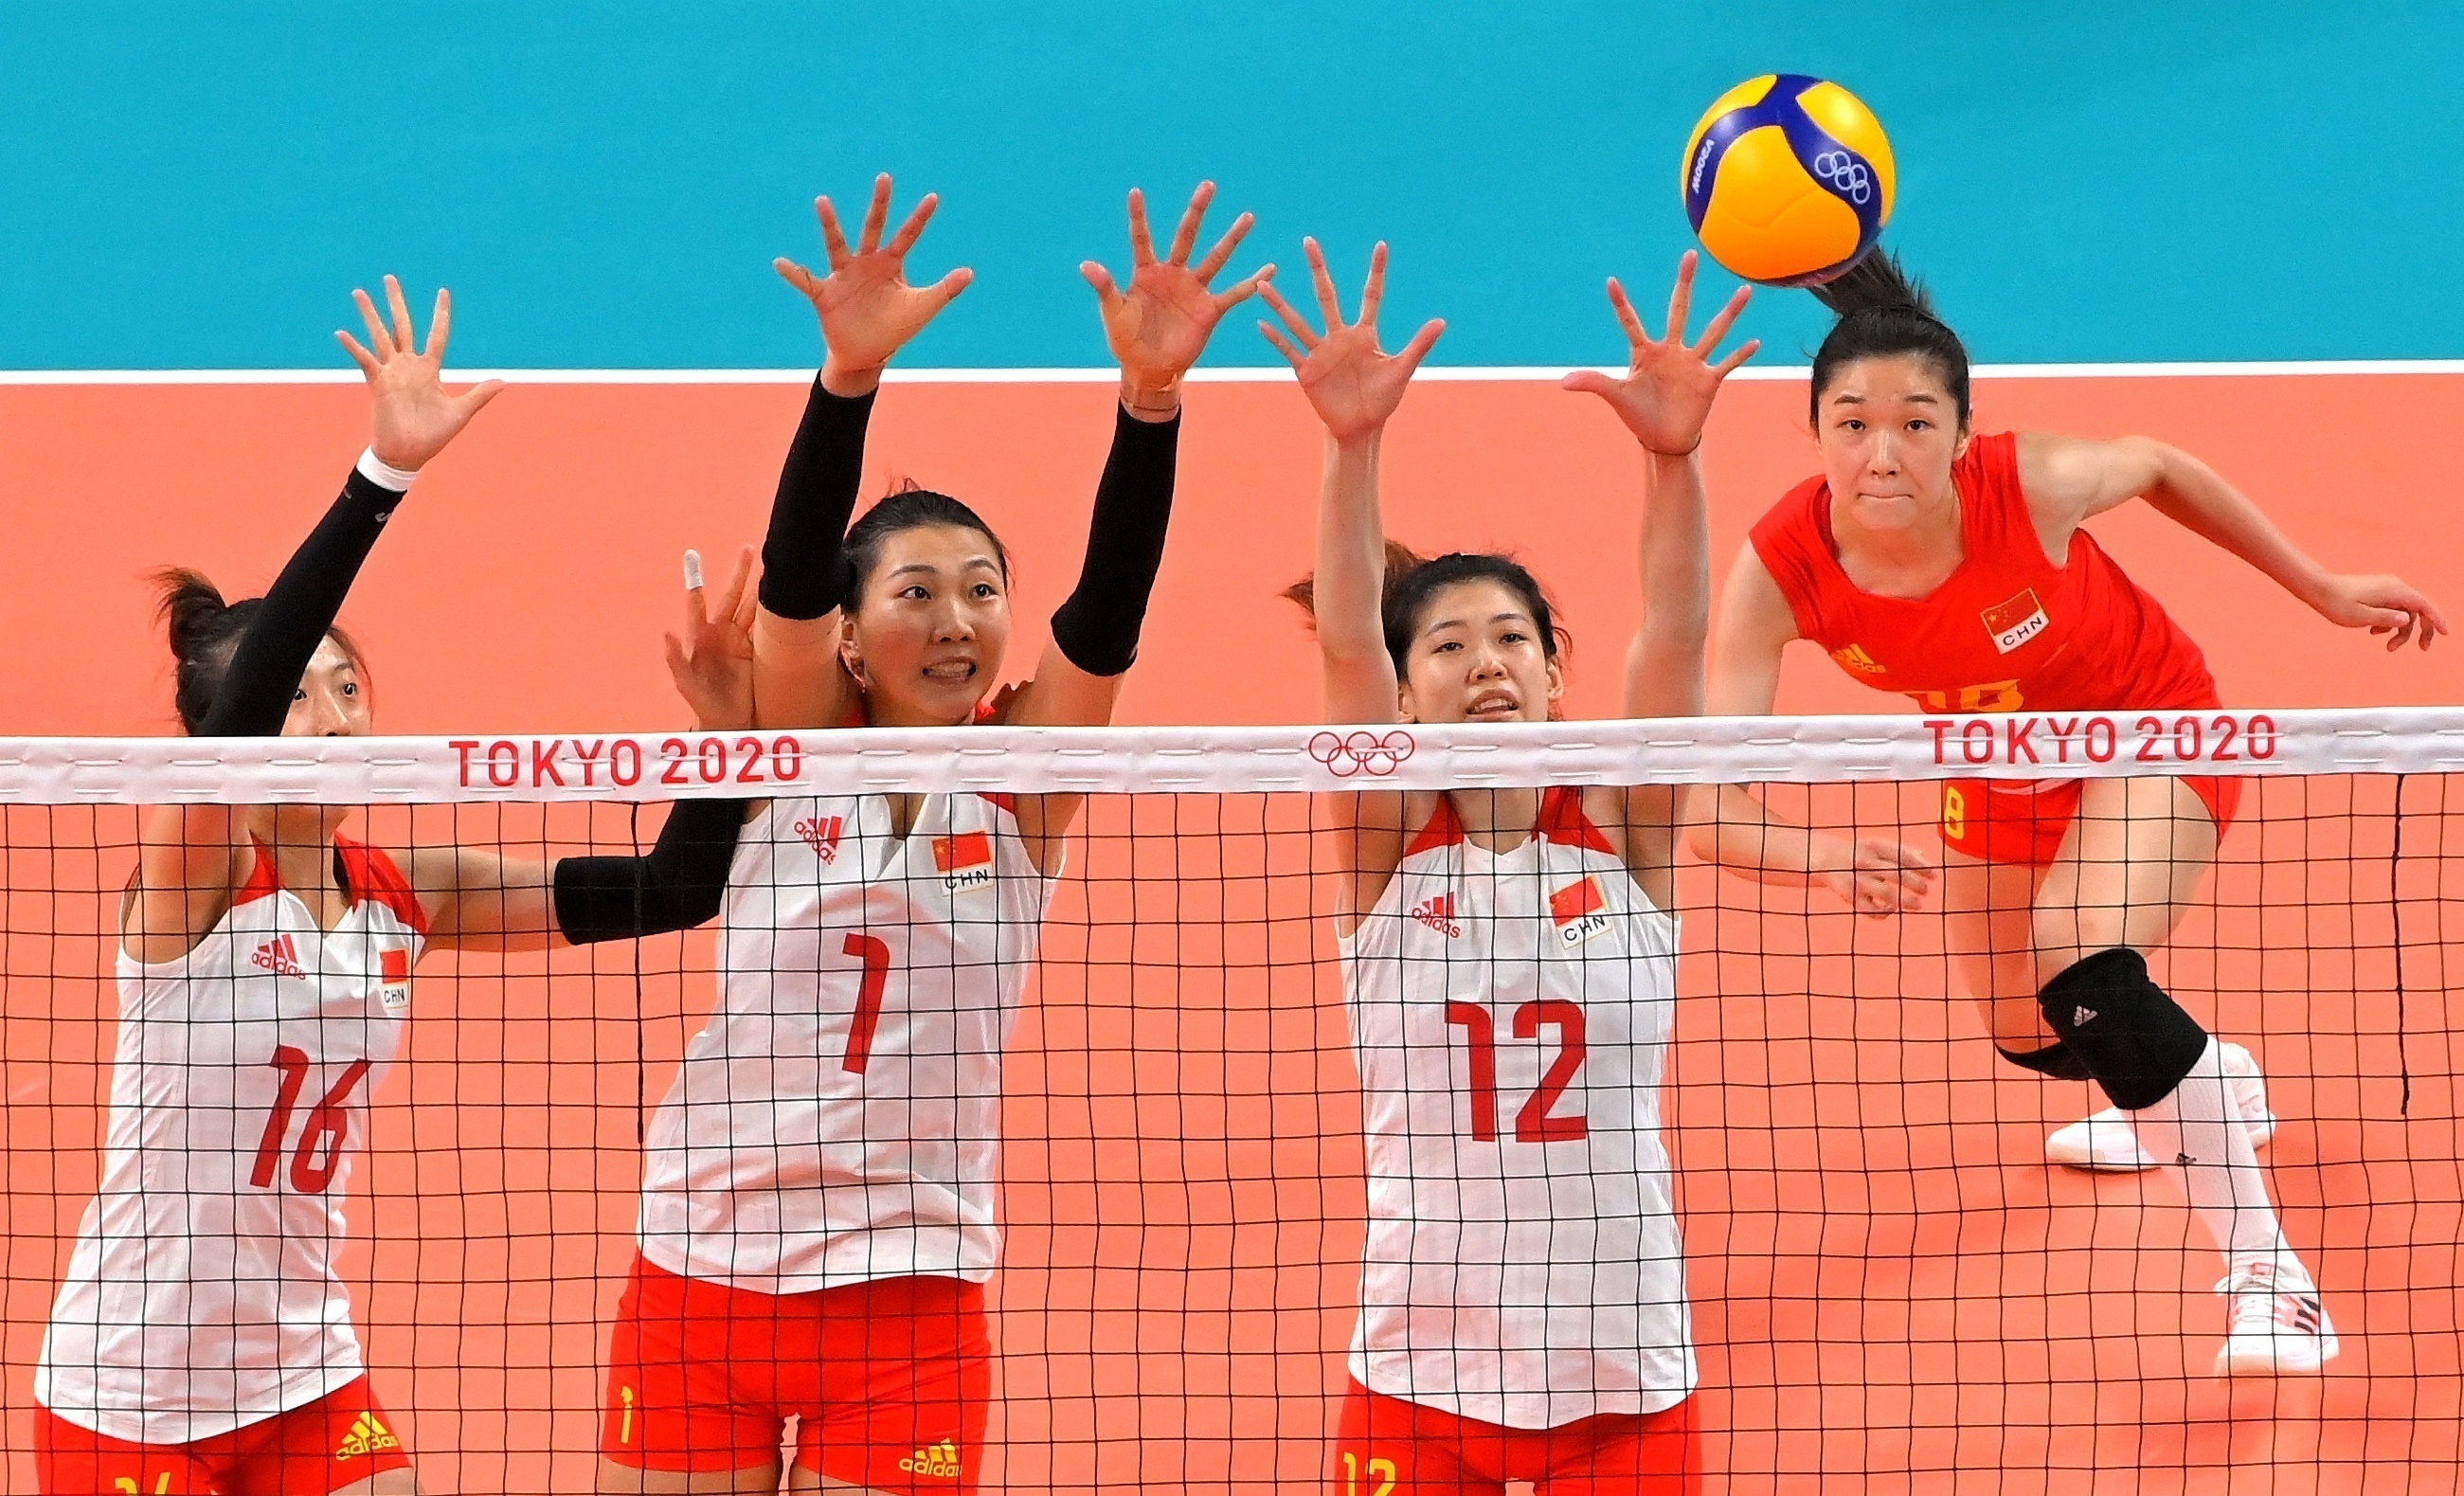 查看更多高清图片7月31日晚,在东京奥运会女排小组赛中,中国女排3比0